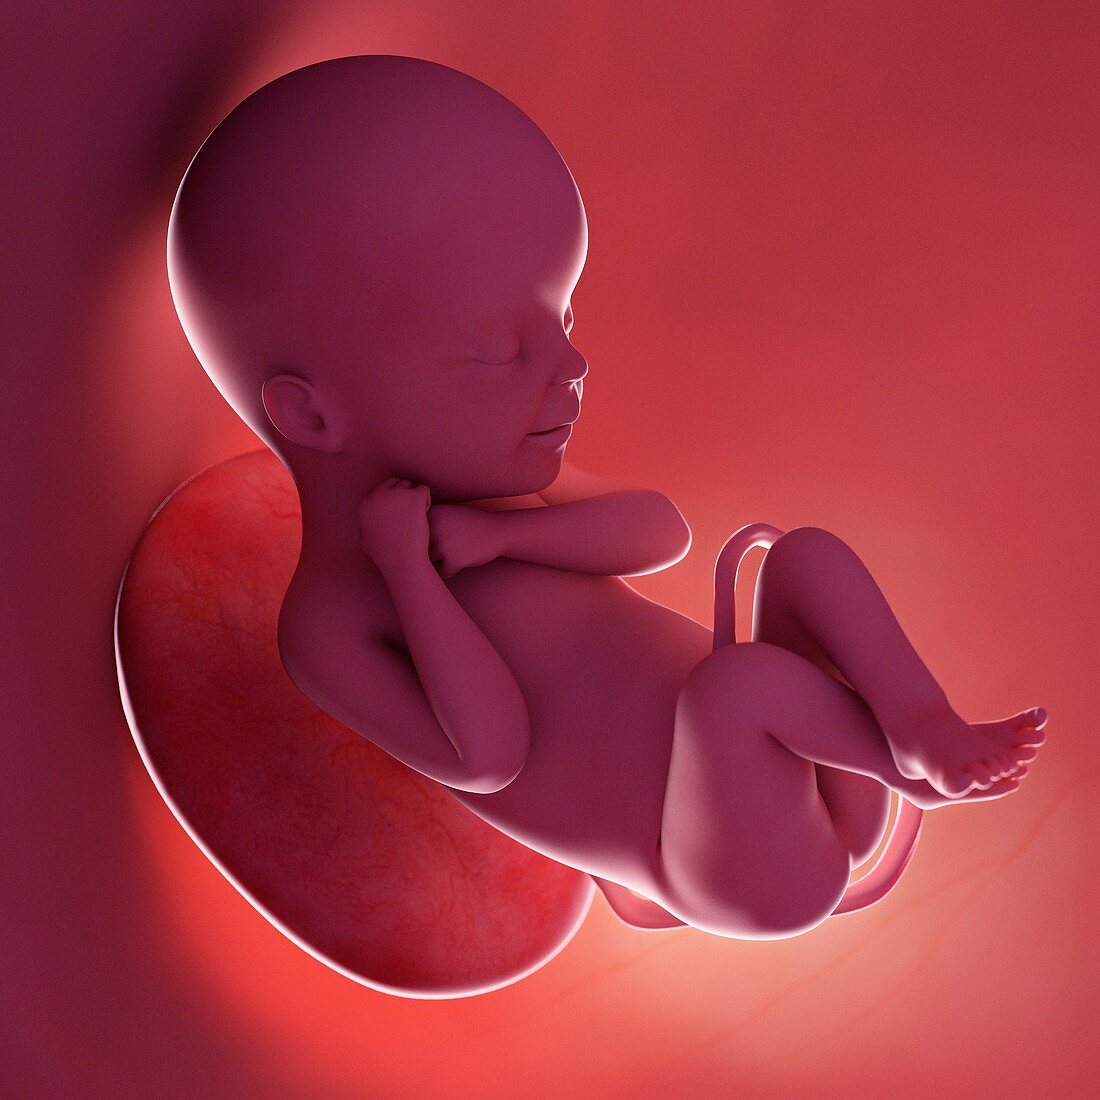 Fetus at week 24, illustration